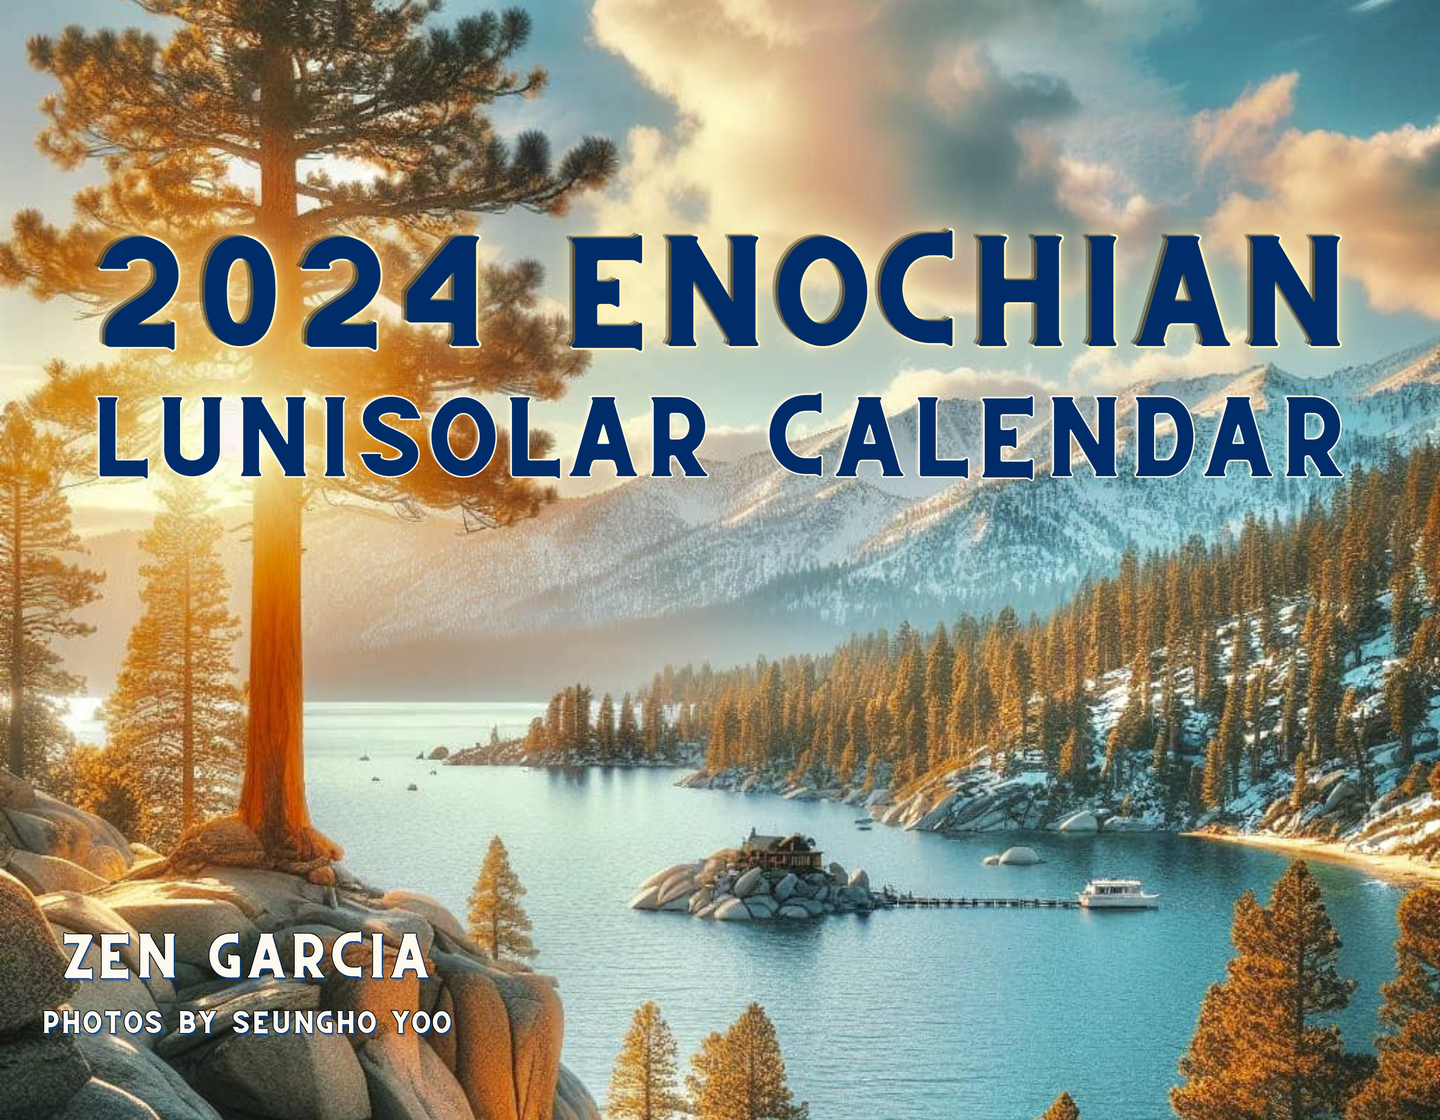 Digital 2024 Enochian Lunisolar Calendar